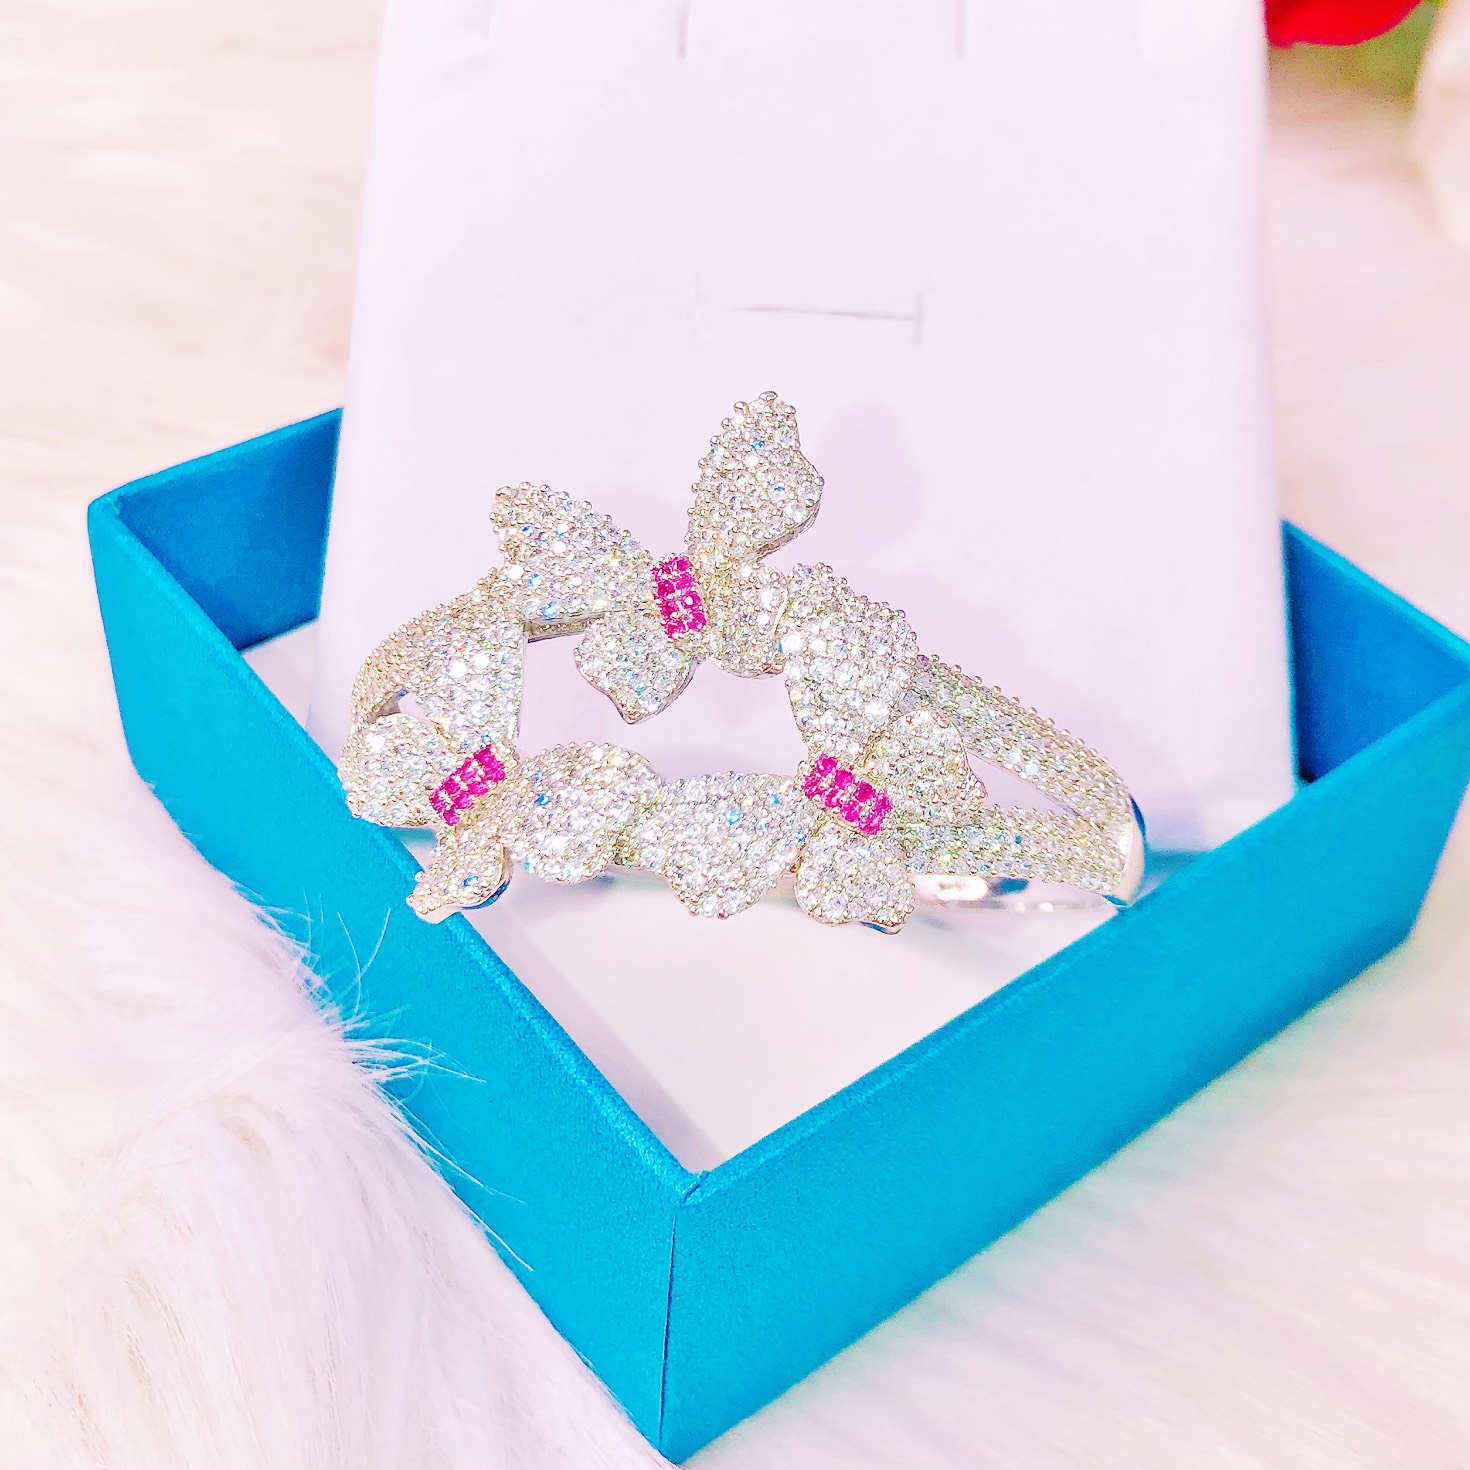 [HCM]Vòng tay Kiểu Mới xinh đẹp vòng tay mạ bạch kim nữ đẹp cao cấp bướm tiên đính đá pha lê lấp lánh lung linh xinh đẹp  Trang sức Gami L050